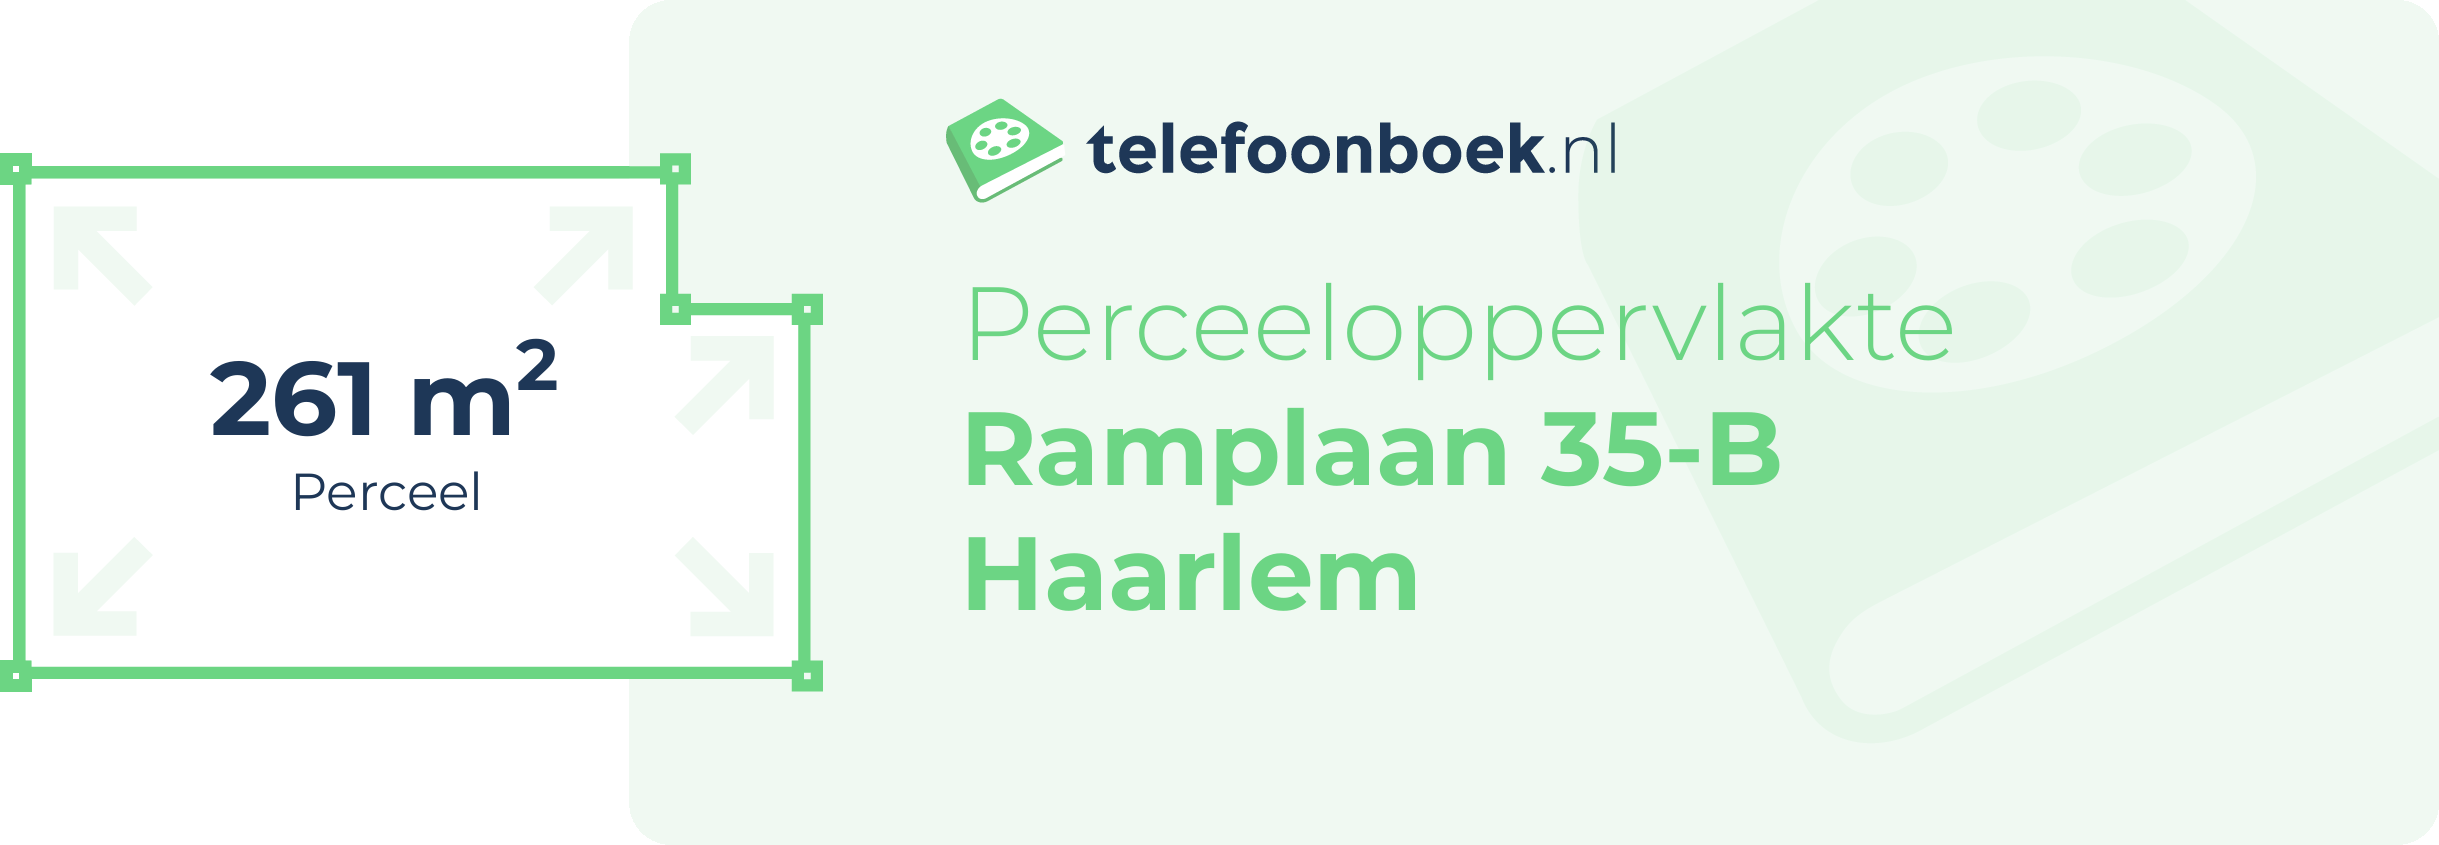 Perceeloppervlakte Ramplaan 35-B Haarlem